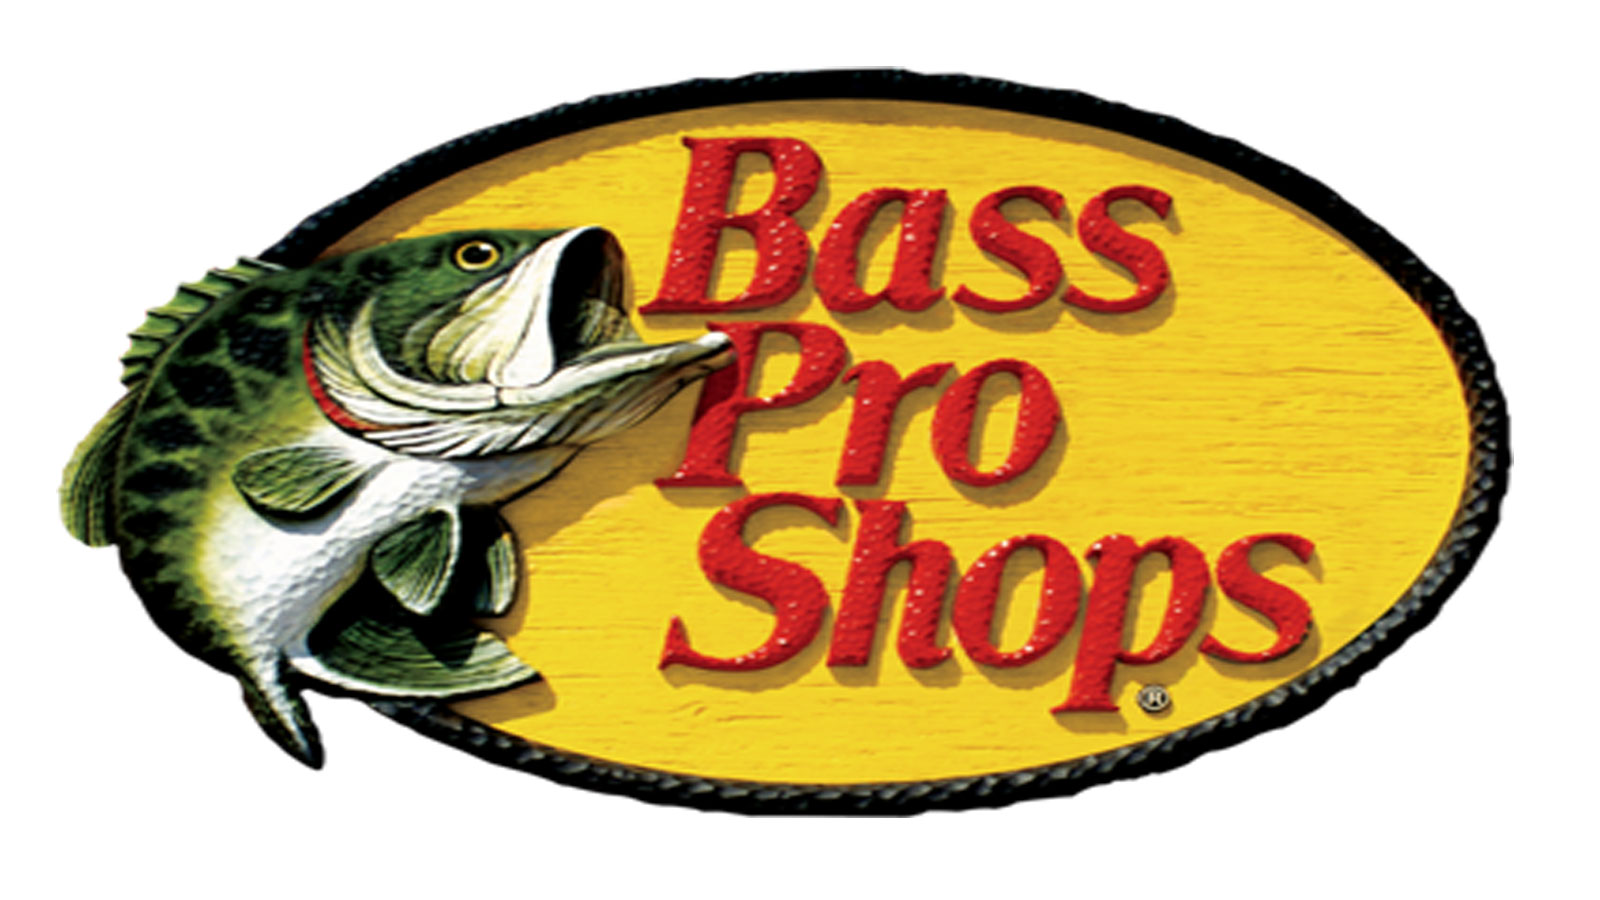 Bass com. Bass Pro shops. Bass Pro shops logo. Басс лого. Basspro магазин.